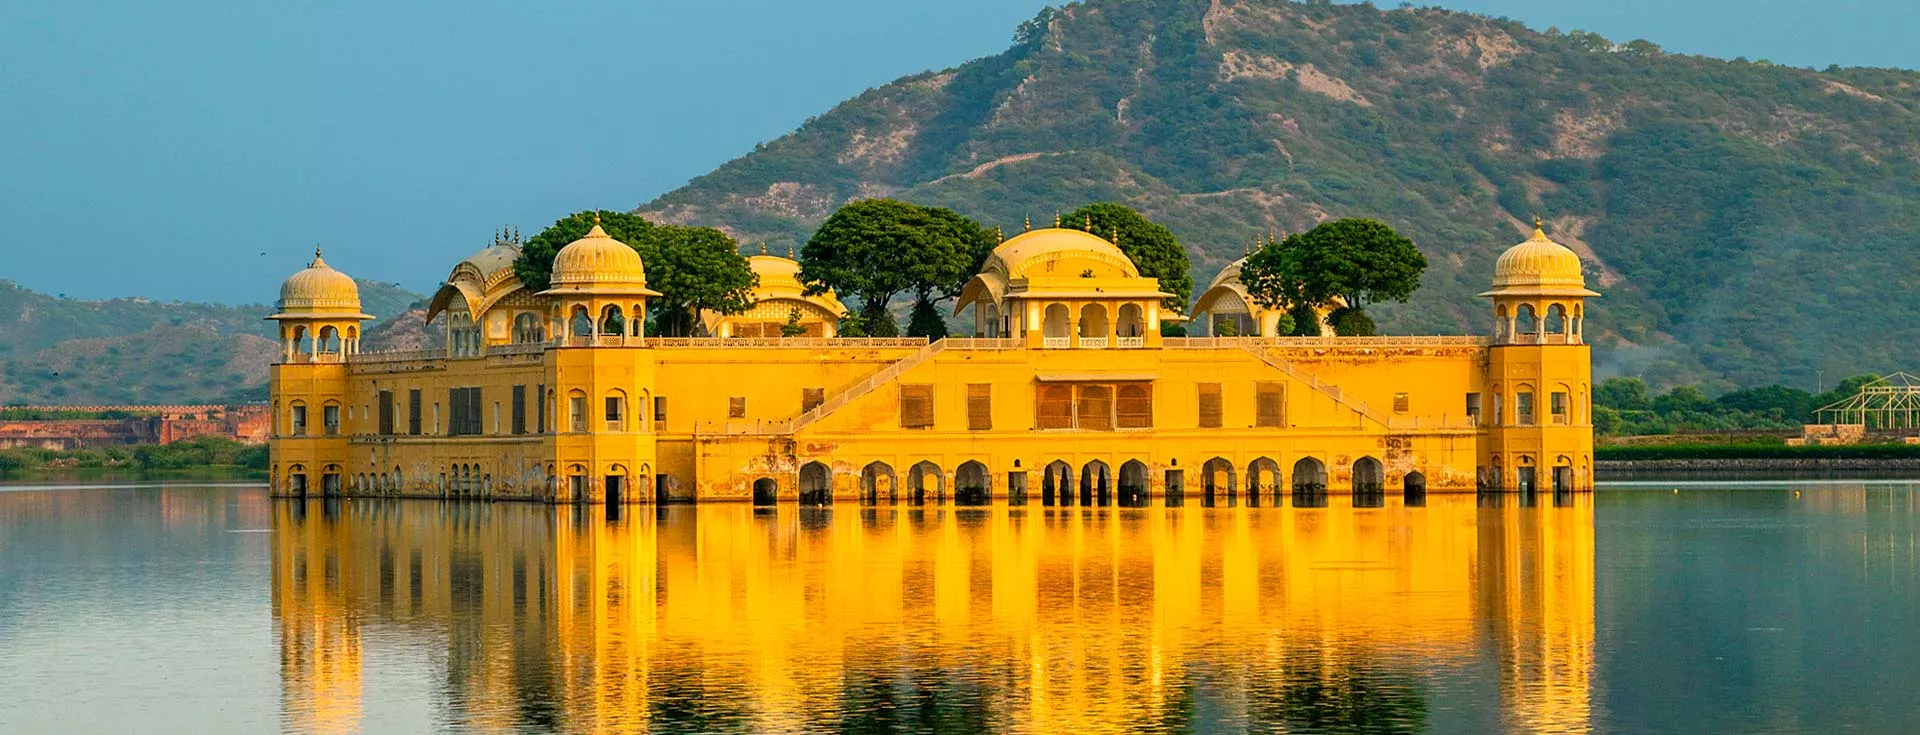 Explore Jal Mahal in Jaipur